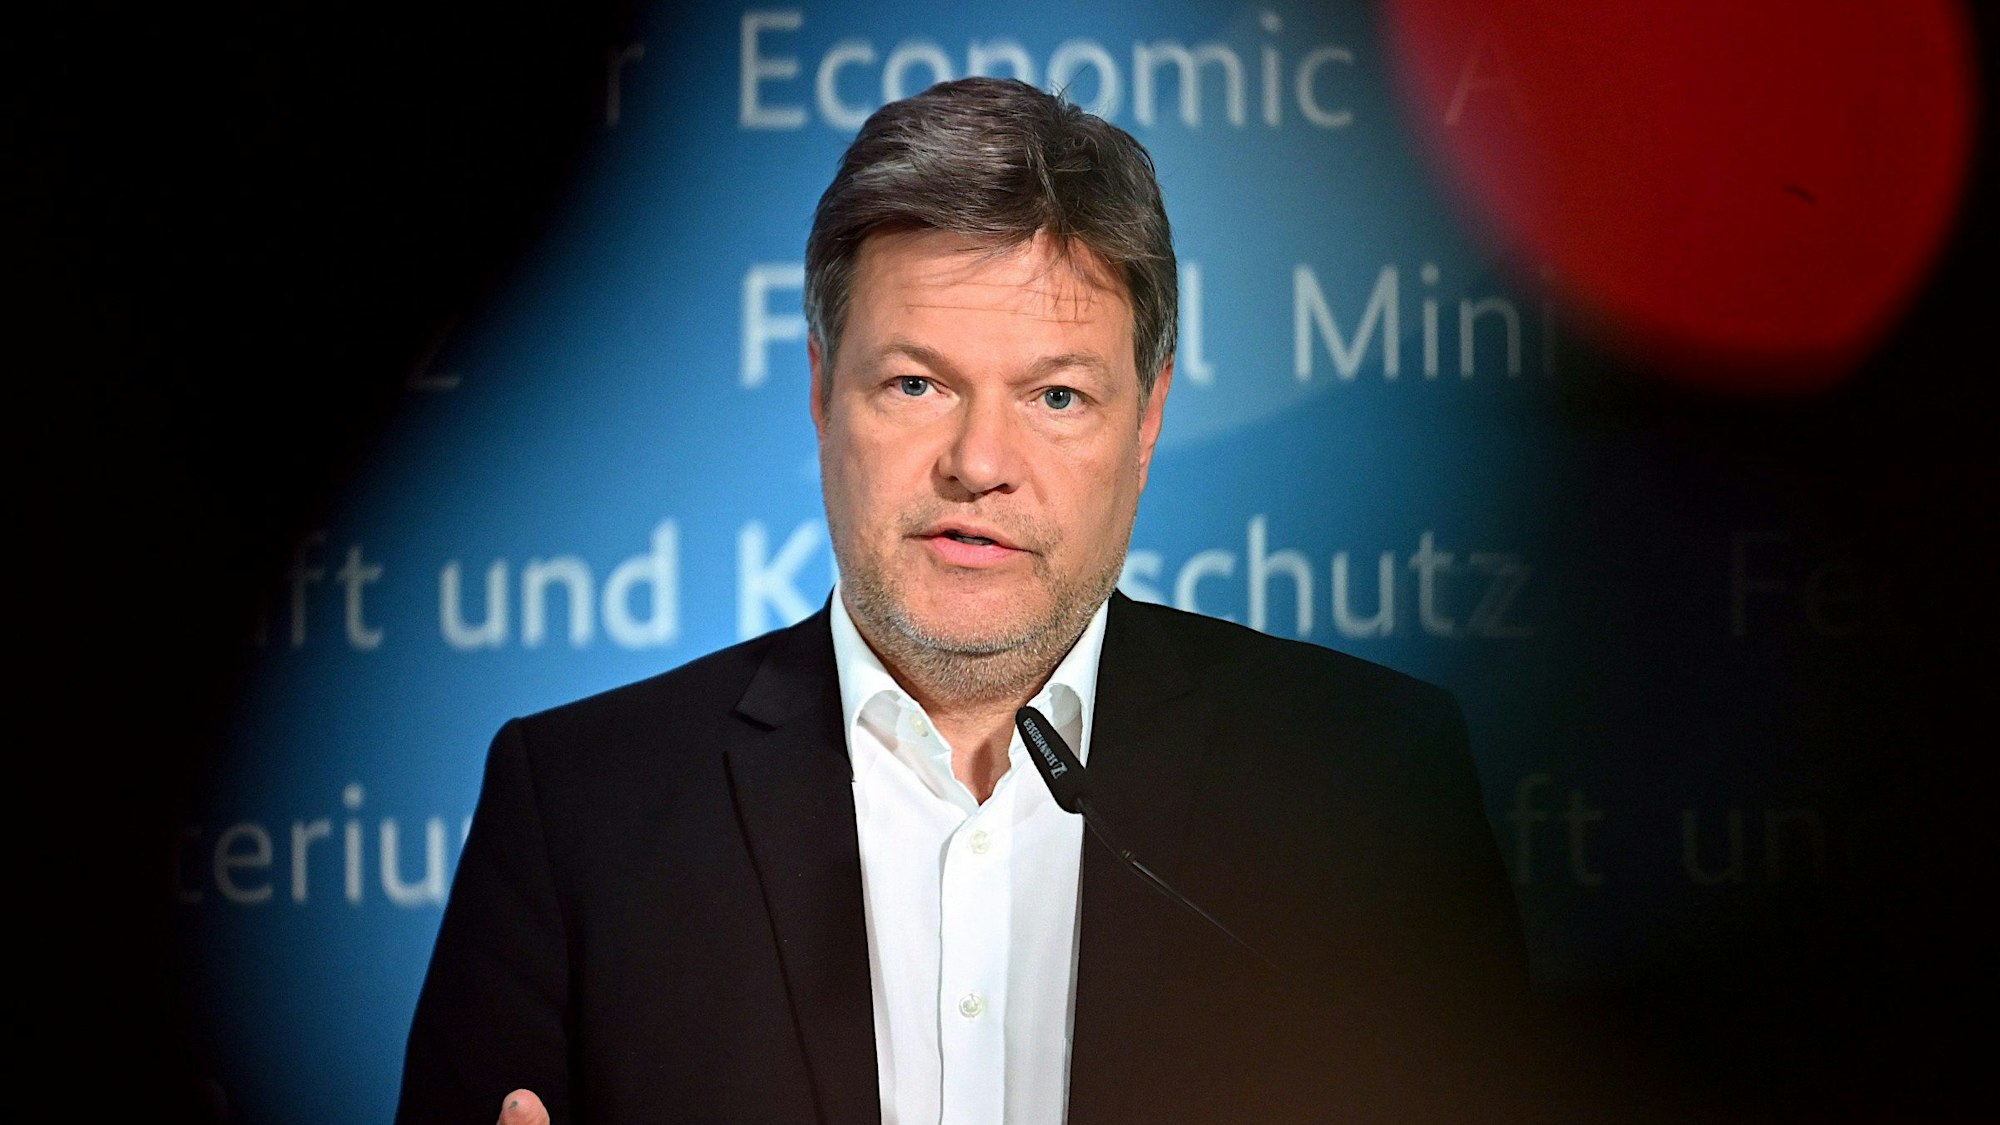 Bundeswirtschaftsminister und Vizekanzler Robert Habeck (Grüne) antwortet bei einer Pressekonferenz Journalisten von einem Rednerpult aus.